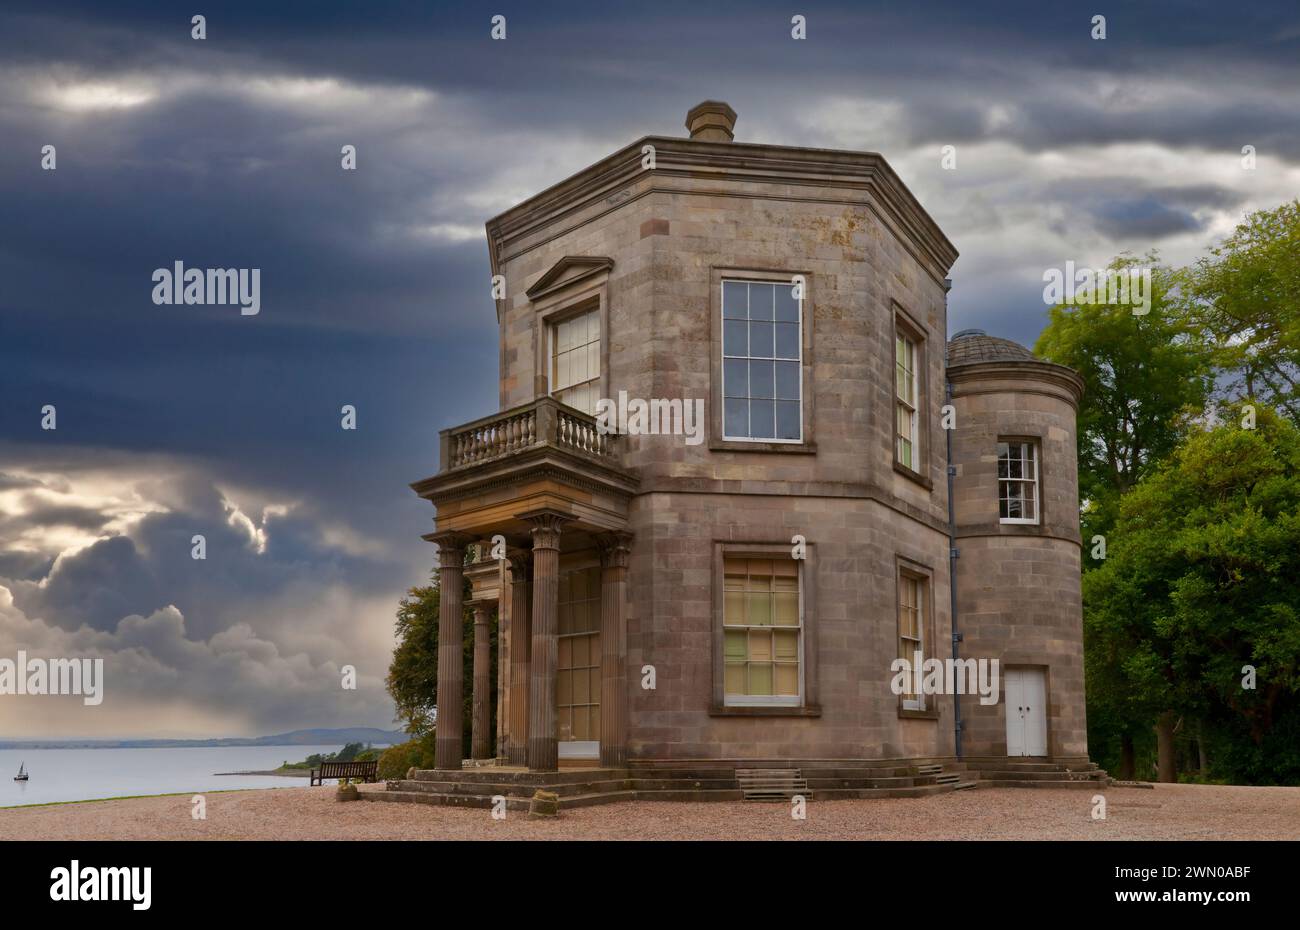 El clásico templo griego del renacimiento del siglo XVIII de los vientos en el monte Stewart demesne en el condado de Down, Irlanda del Norte Foto de stock